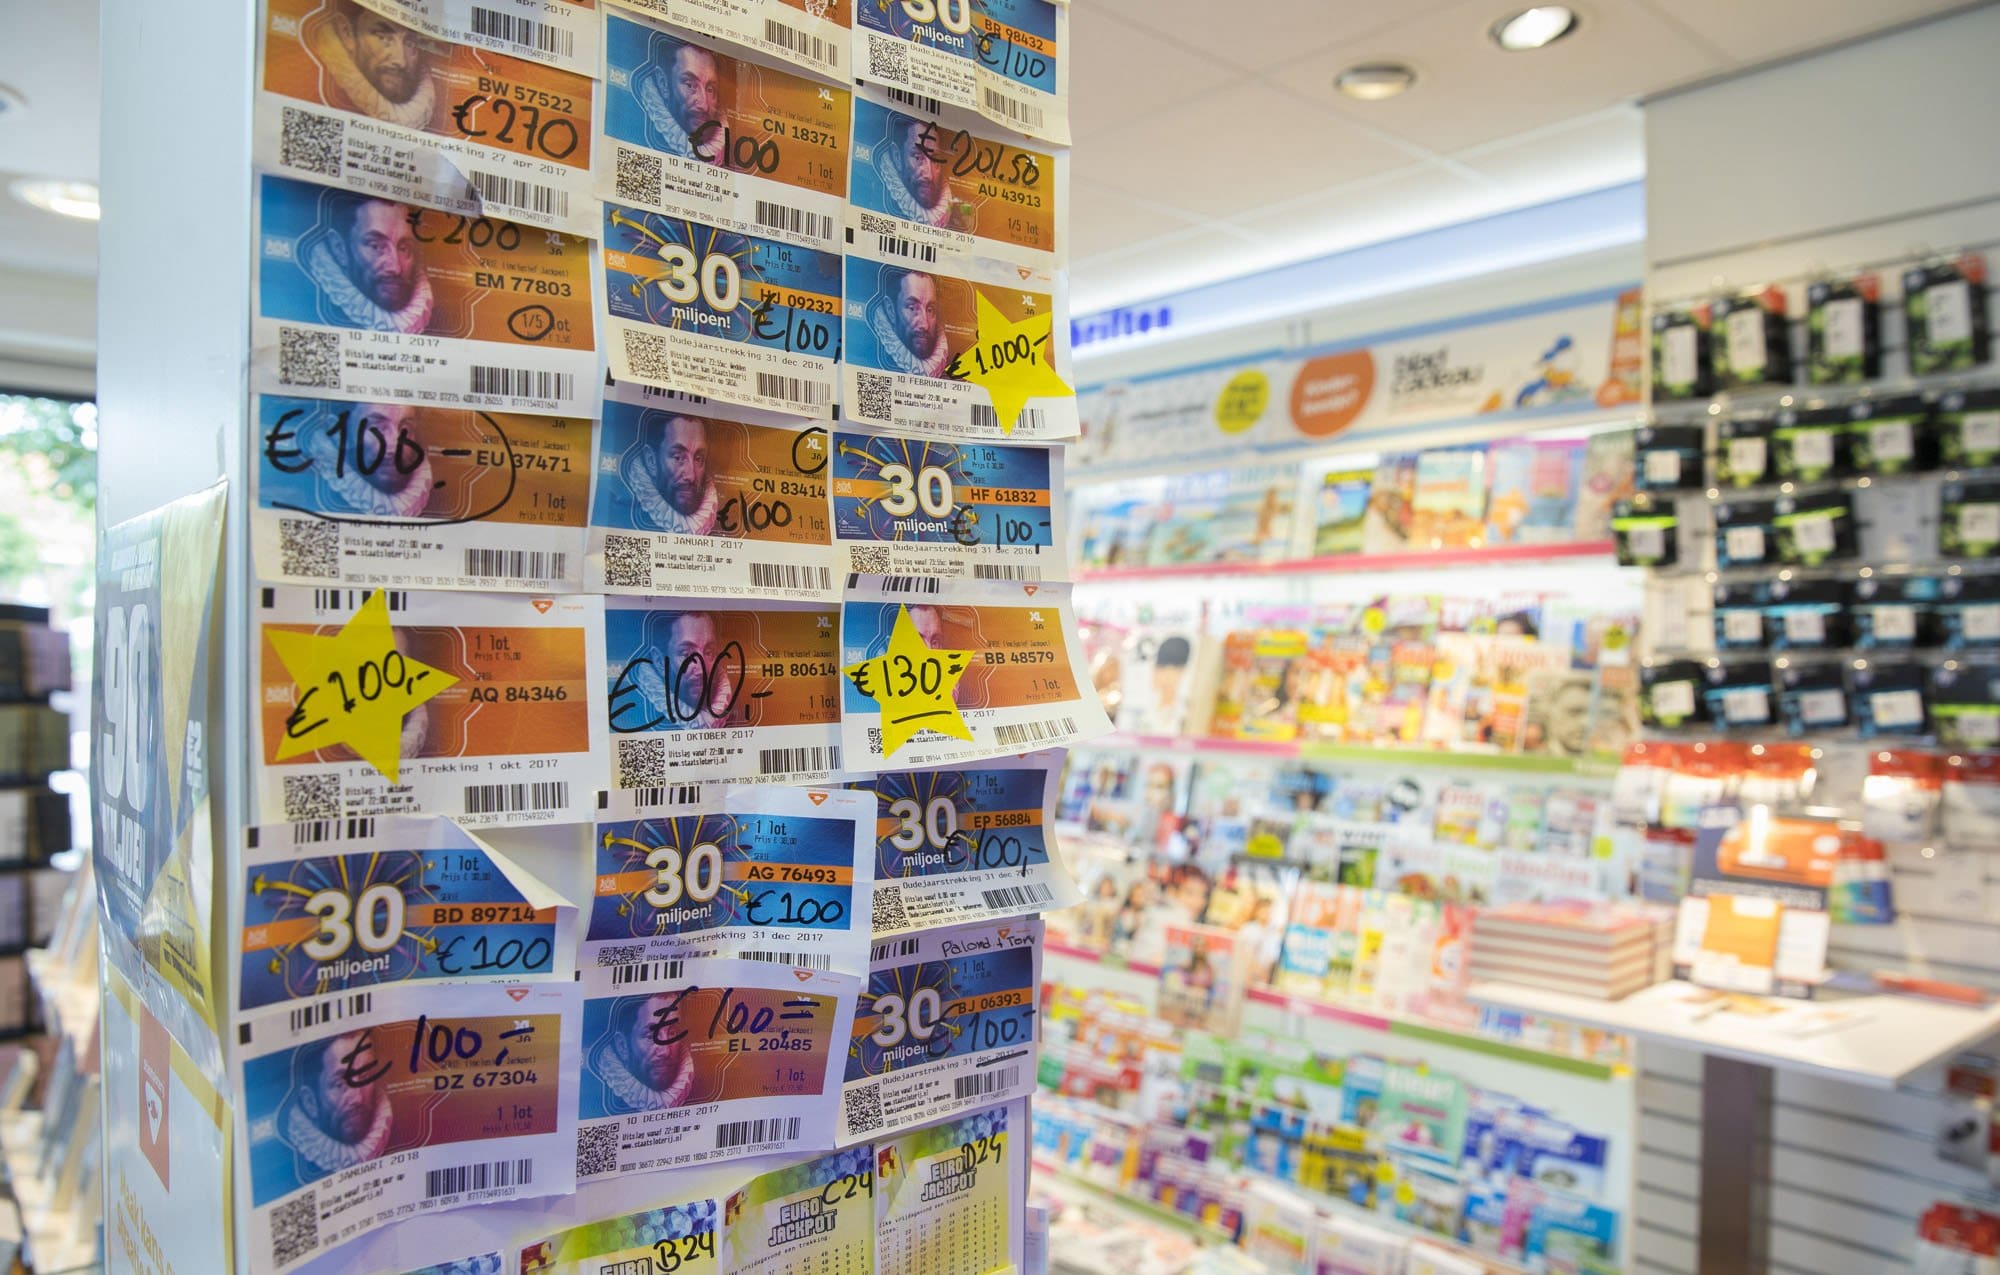 RTL Nieuws spreekt met experts over de slogan van loterijen: “Focus ligt nu op het positieve”